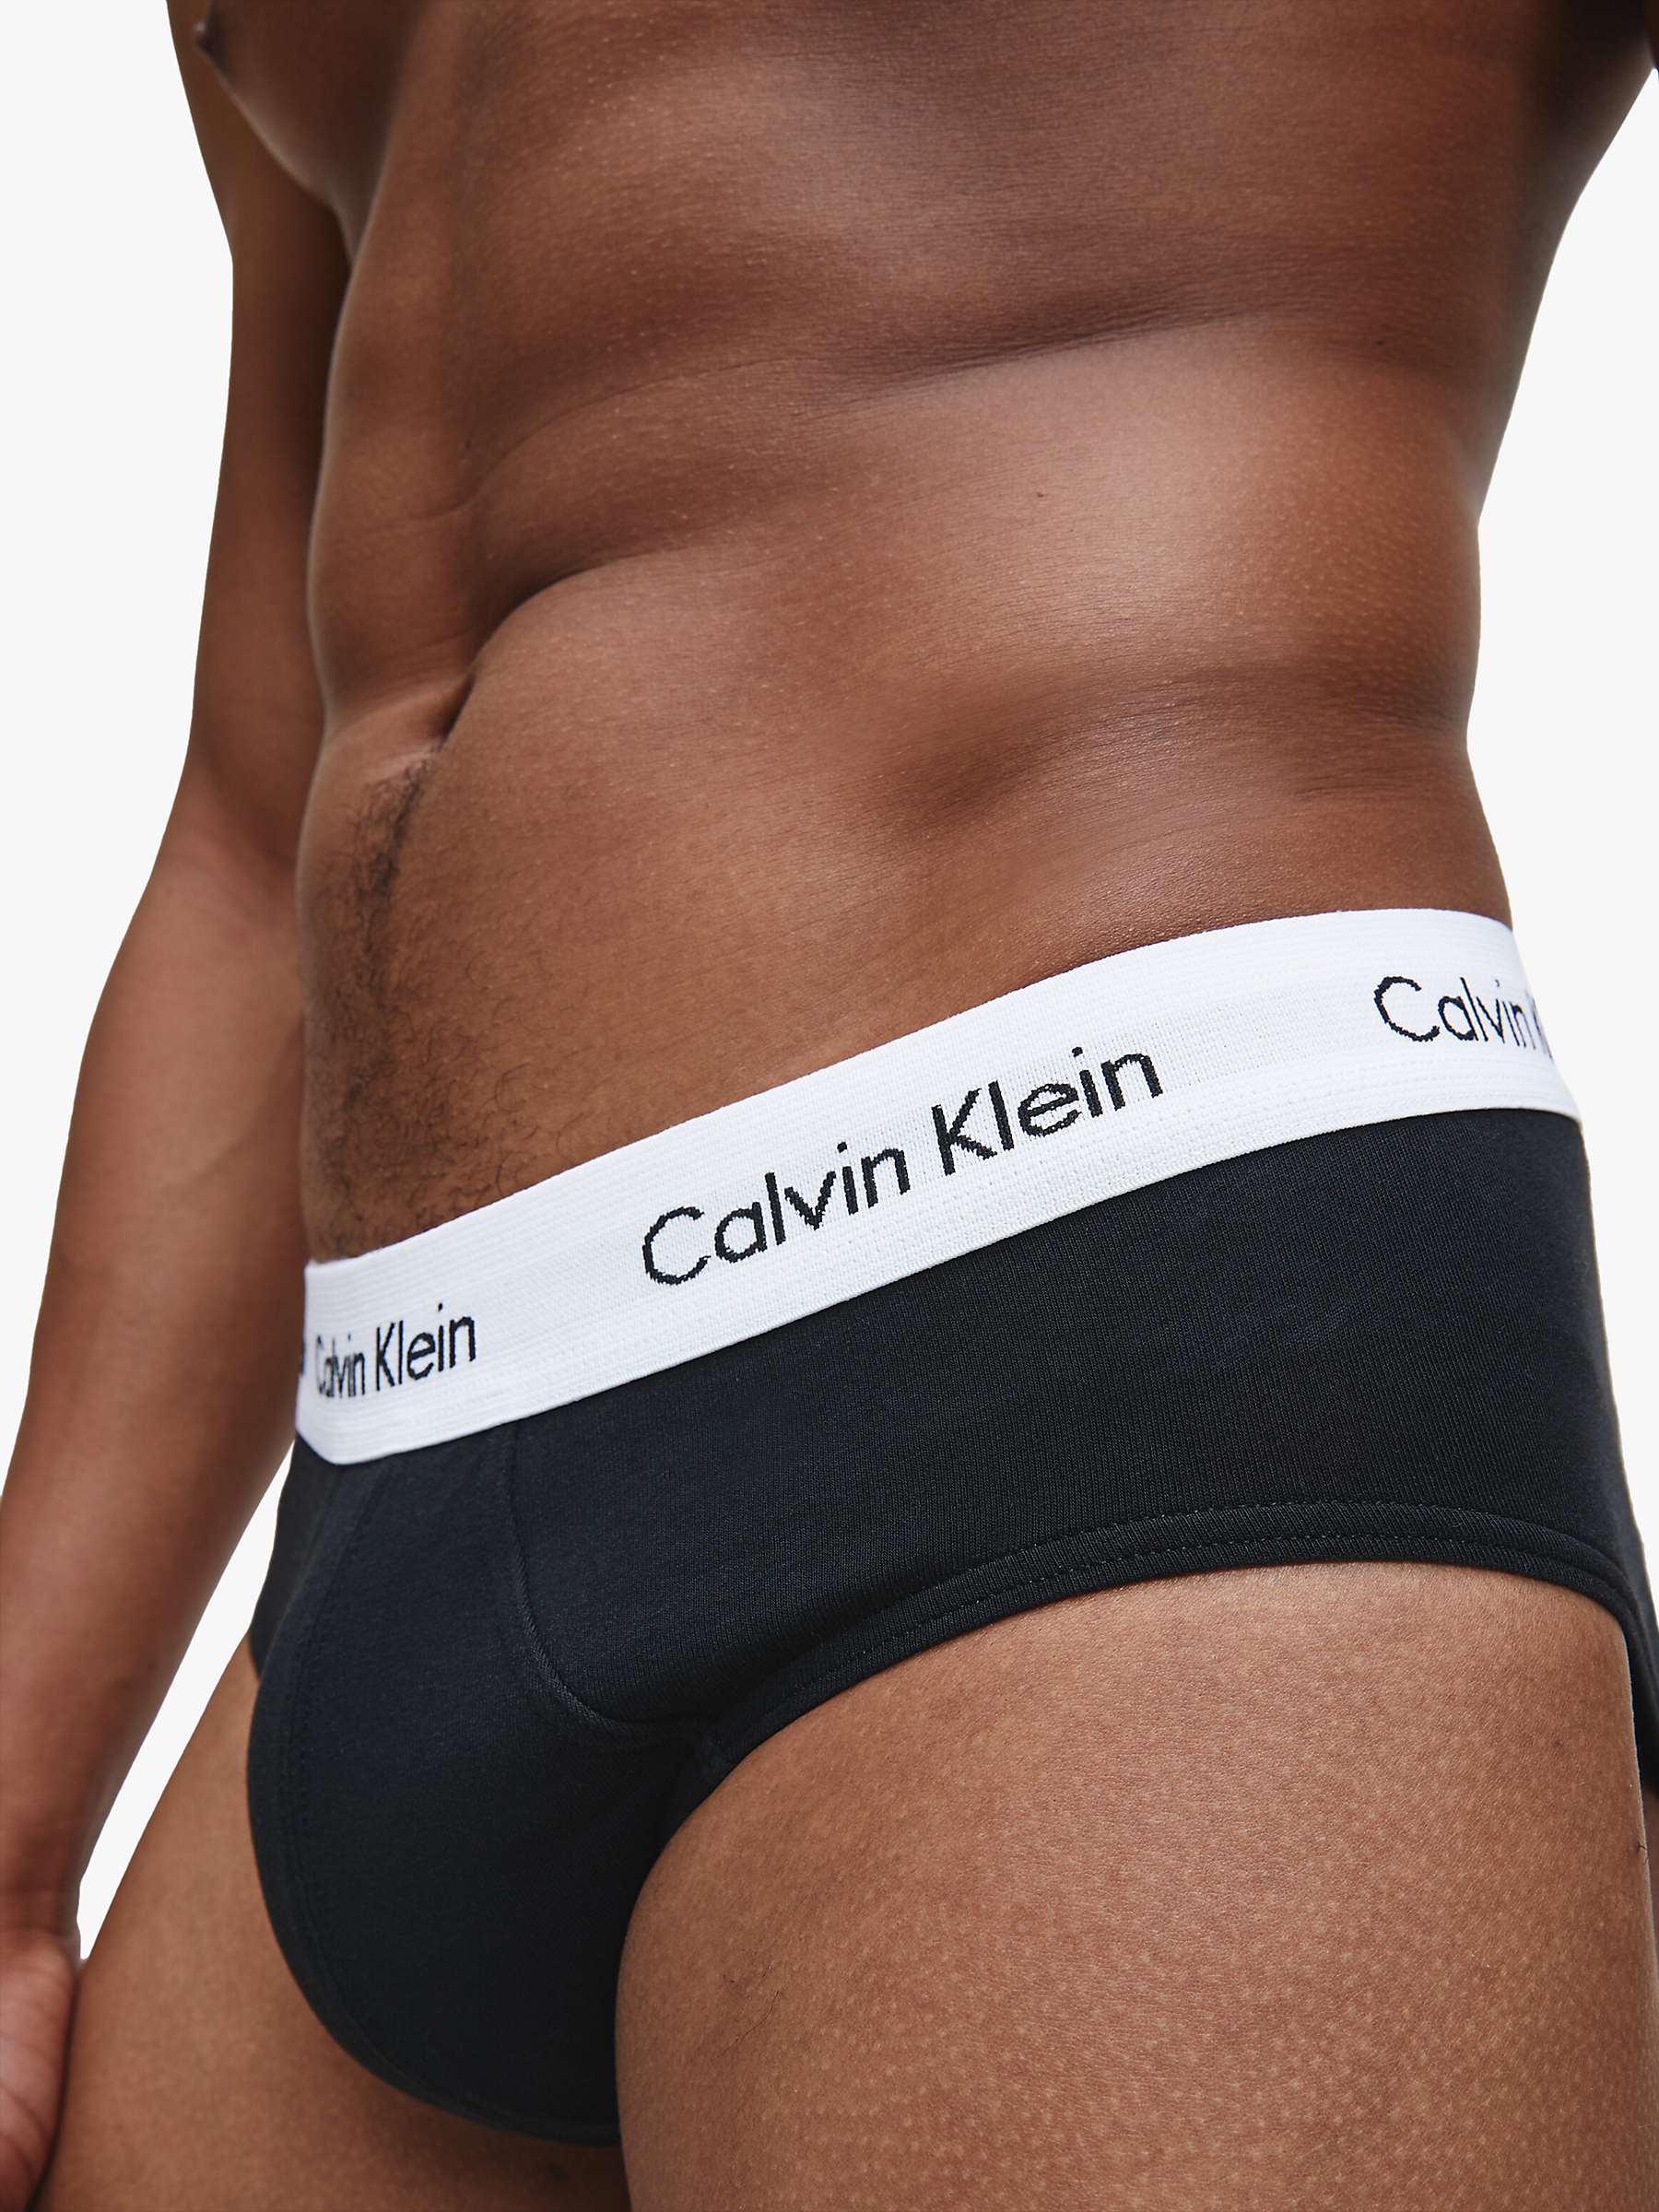 Calvin Klein Underwear Cotton Briefs, Pack of 3, Black at John